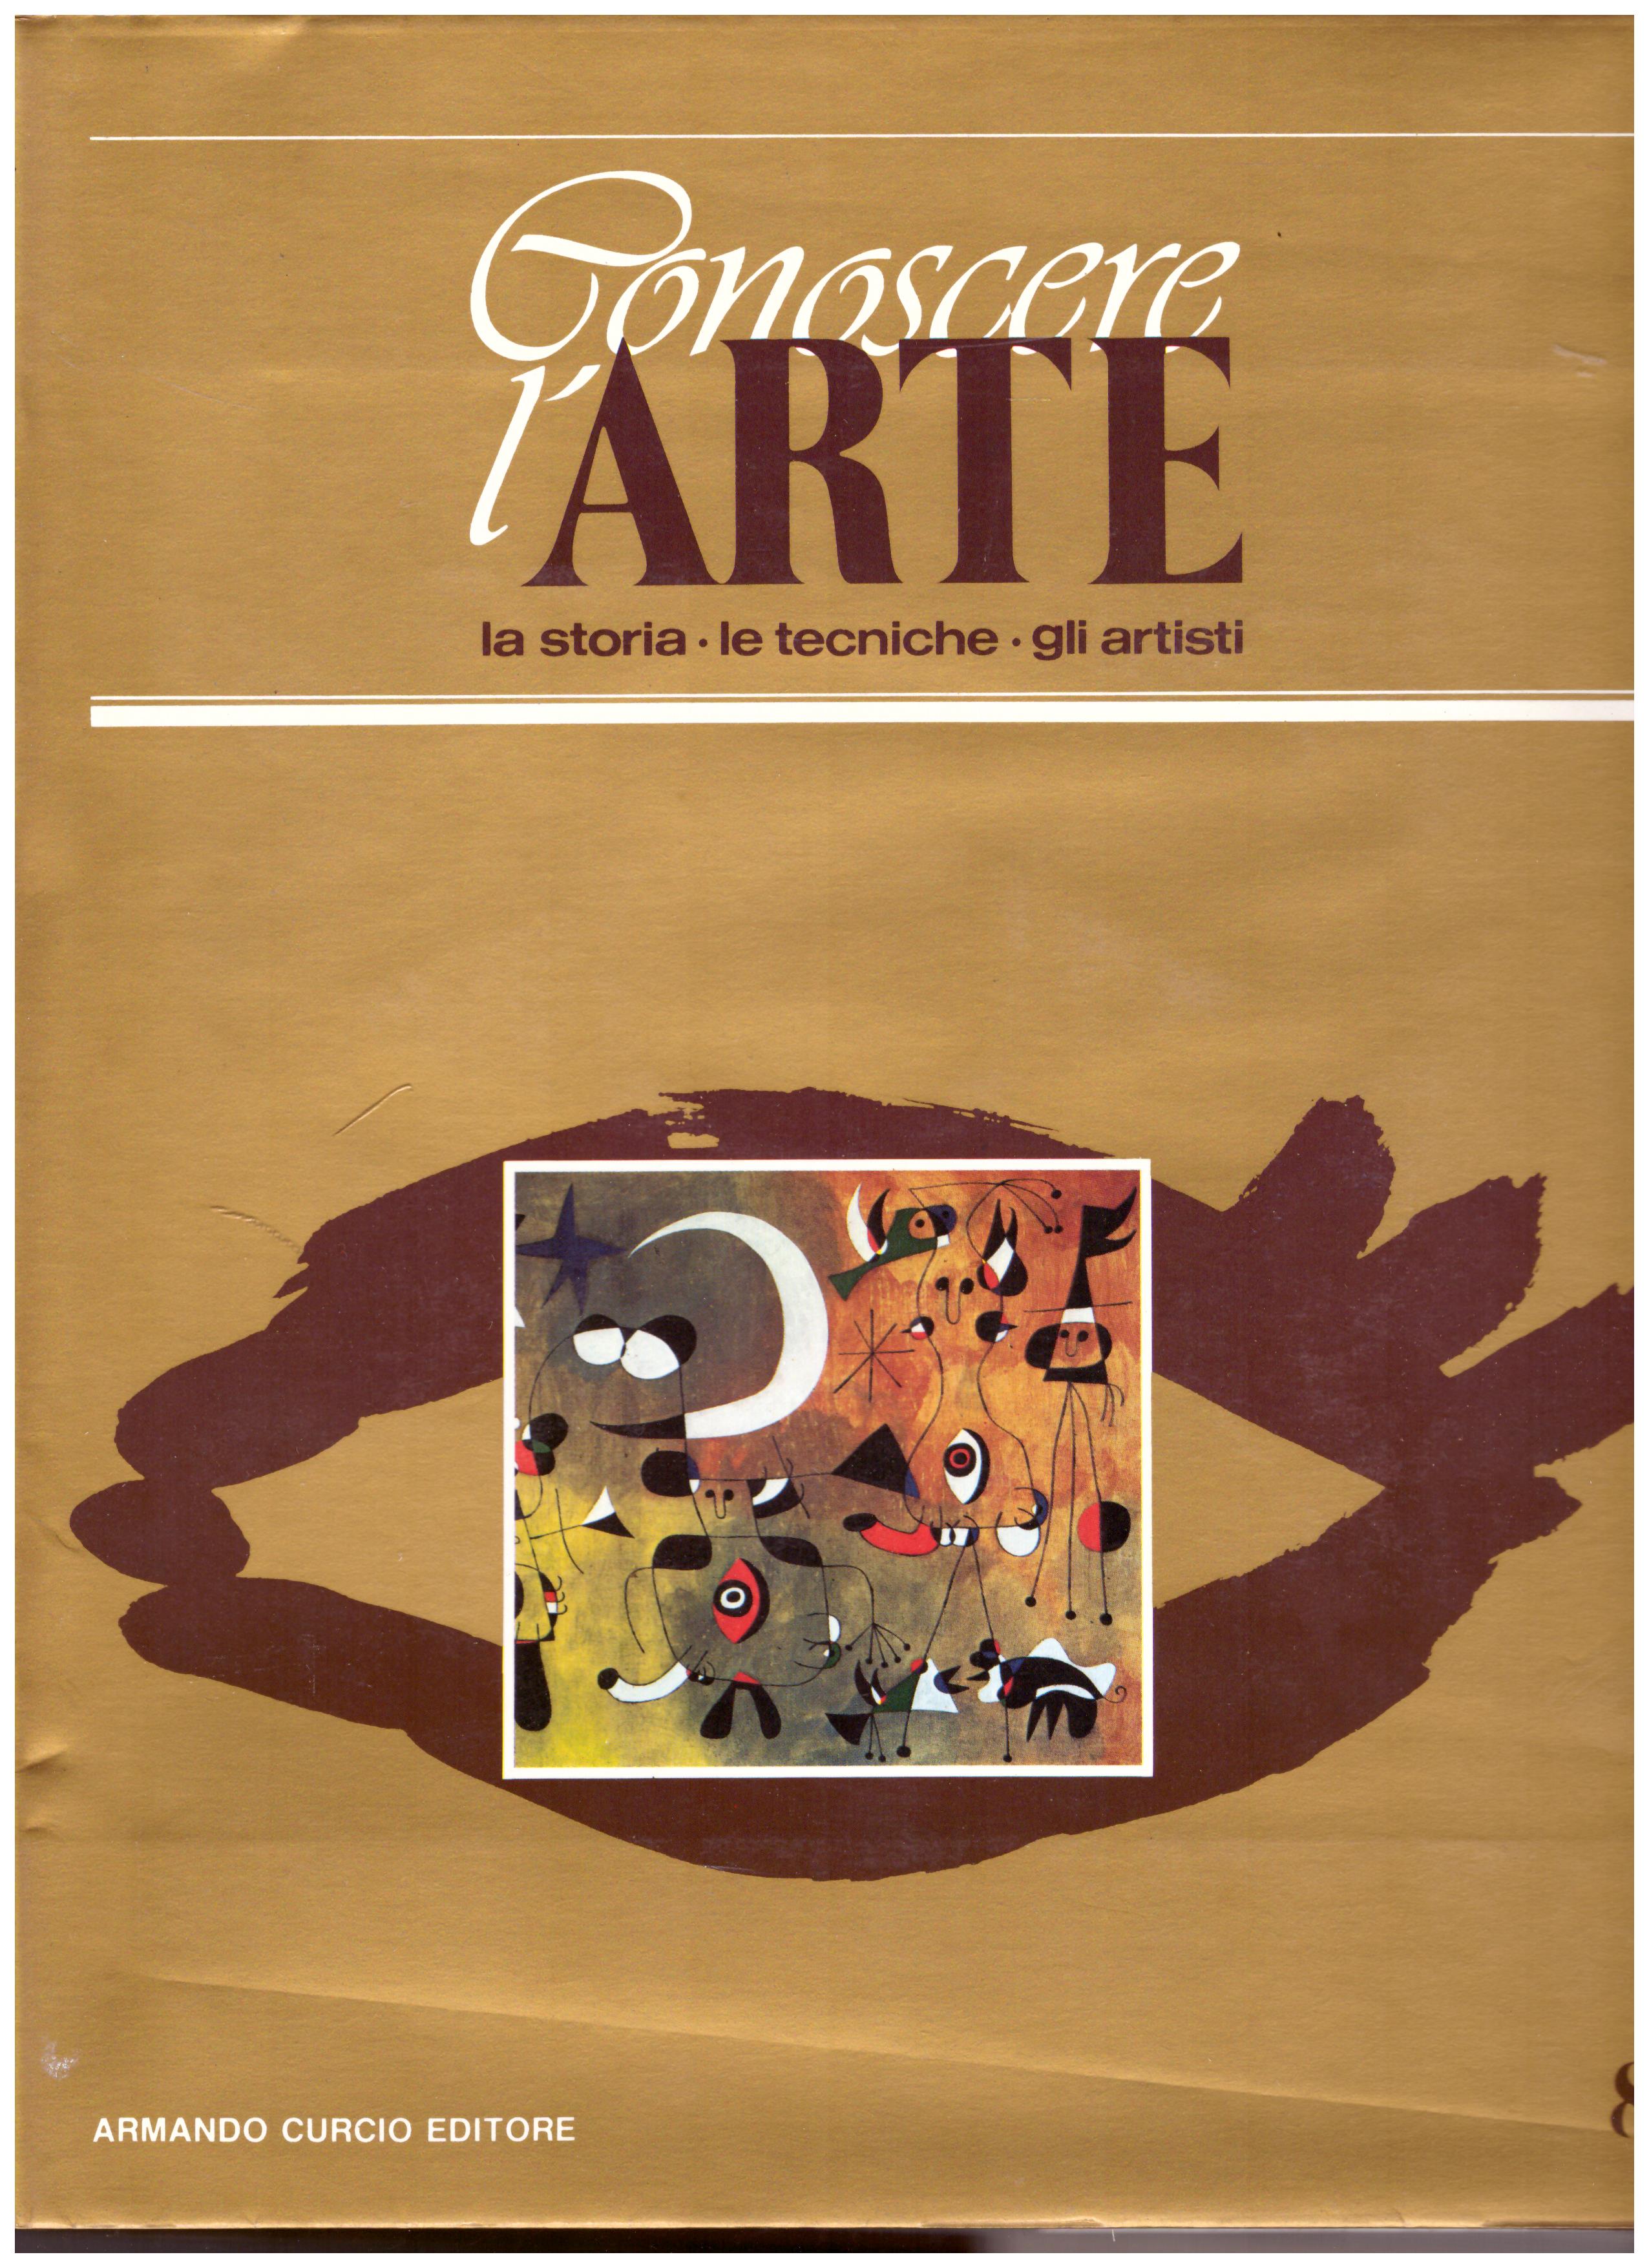 Titolo: Conoscere l'arte n.8  Autore: AA.VV.  Editore: Armando Curcio editore 1986